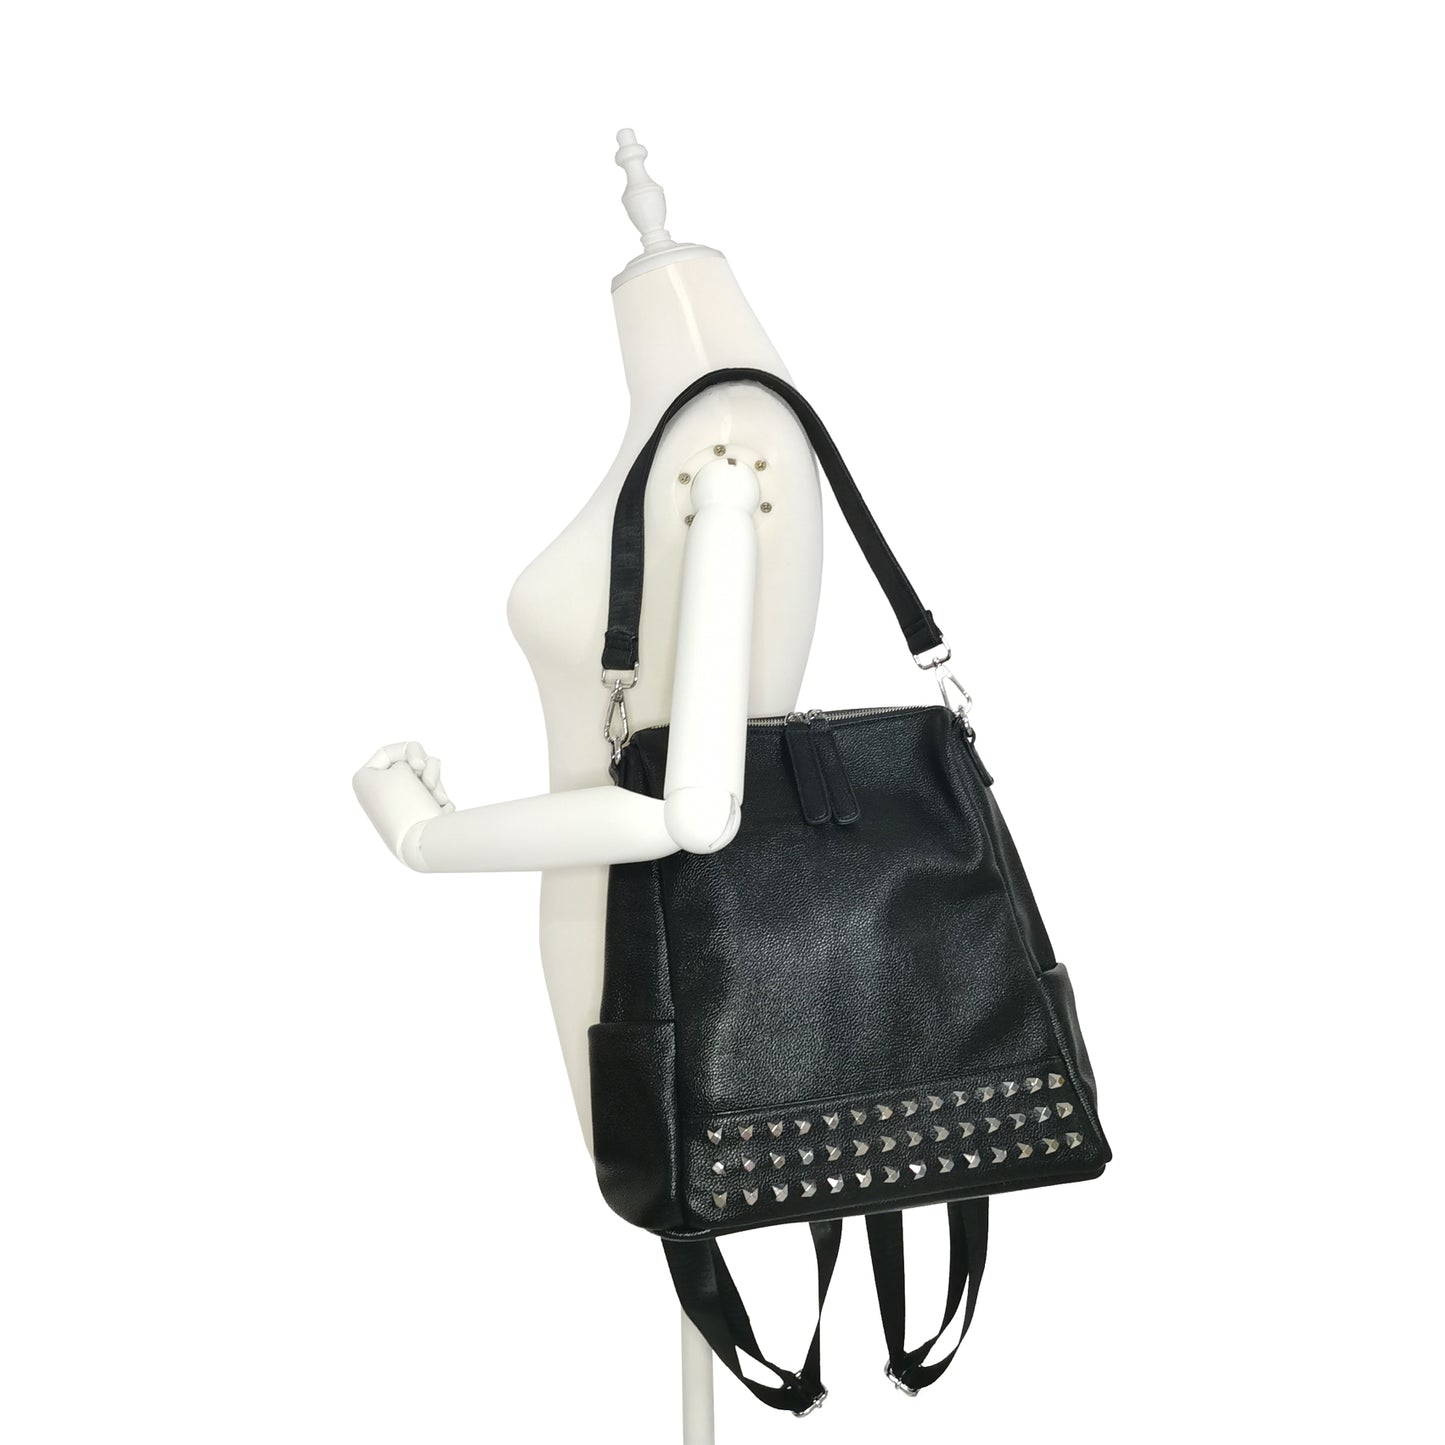 Women's cowhide leather backpack Rivet V2 design